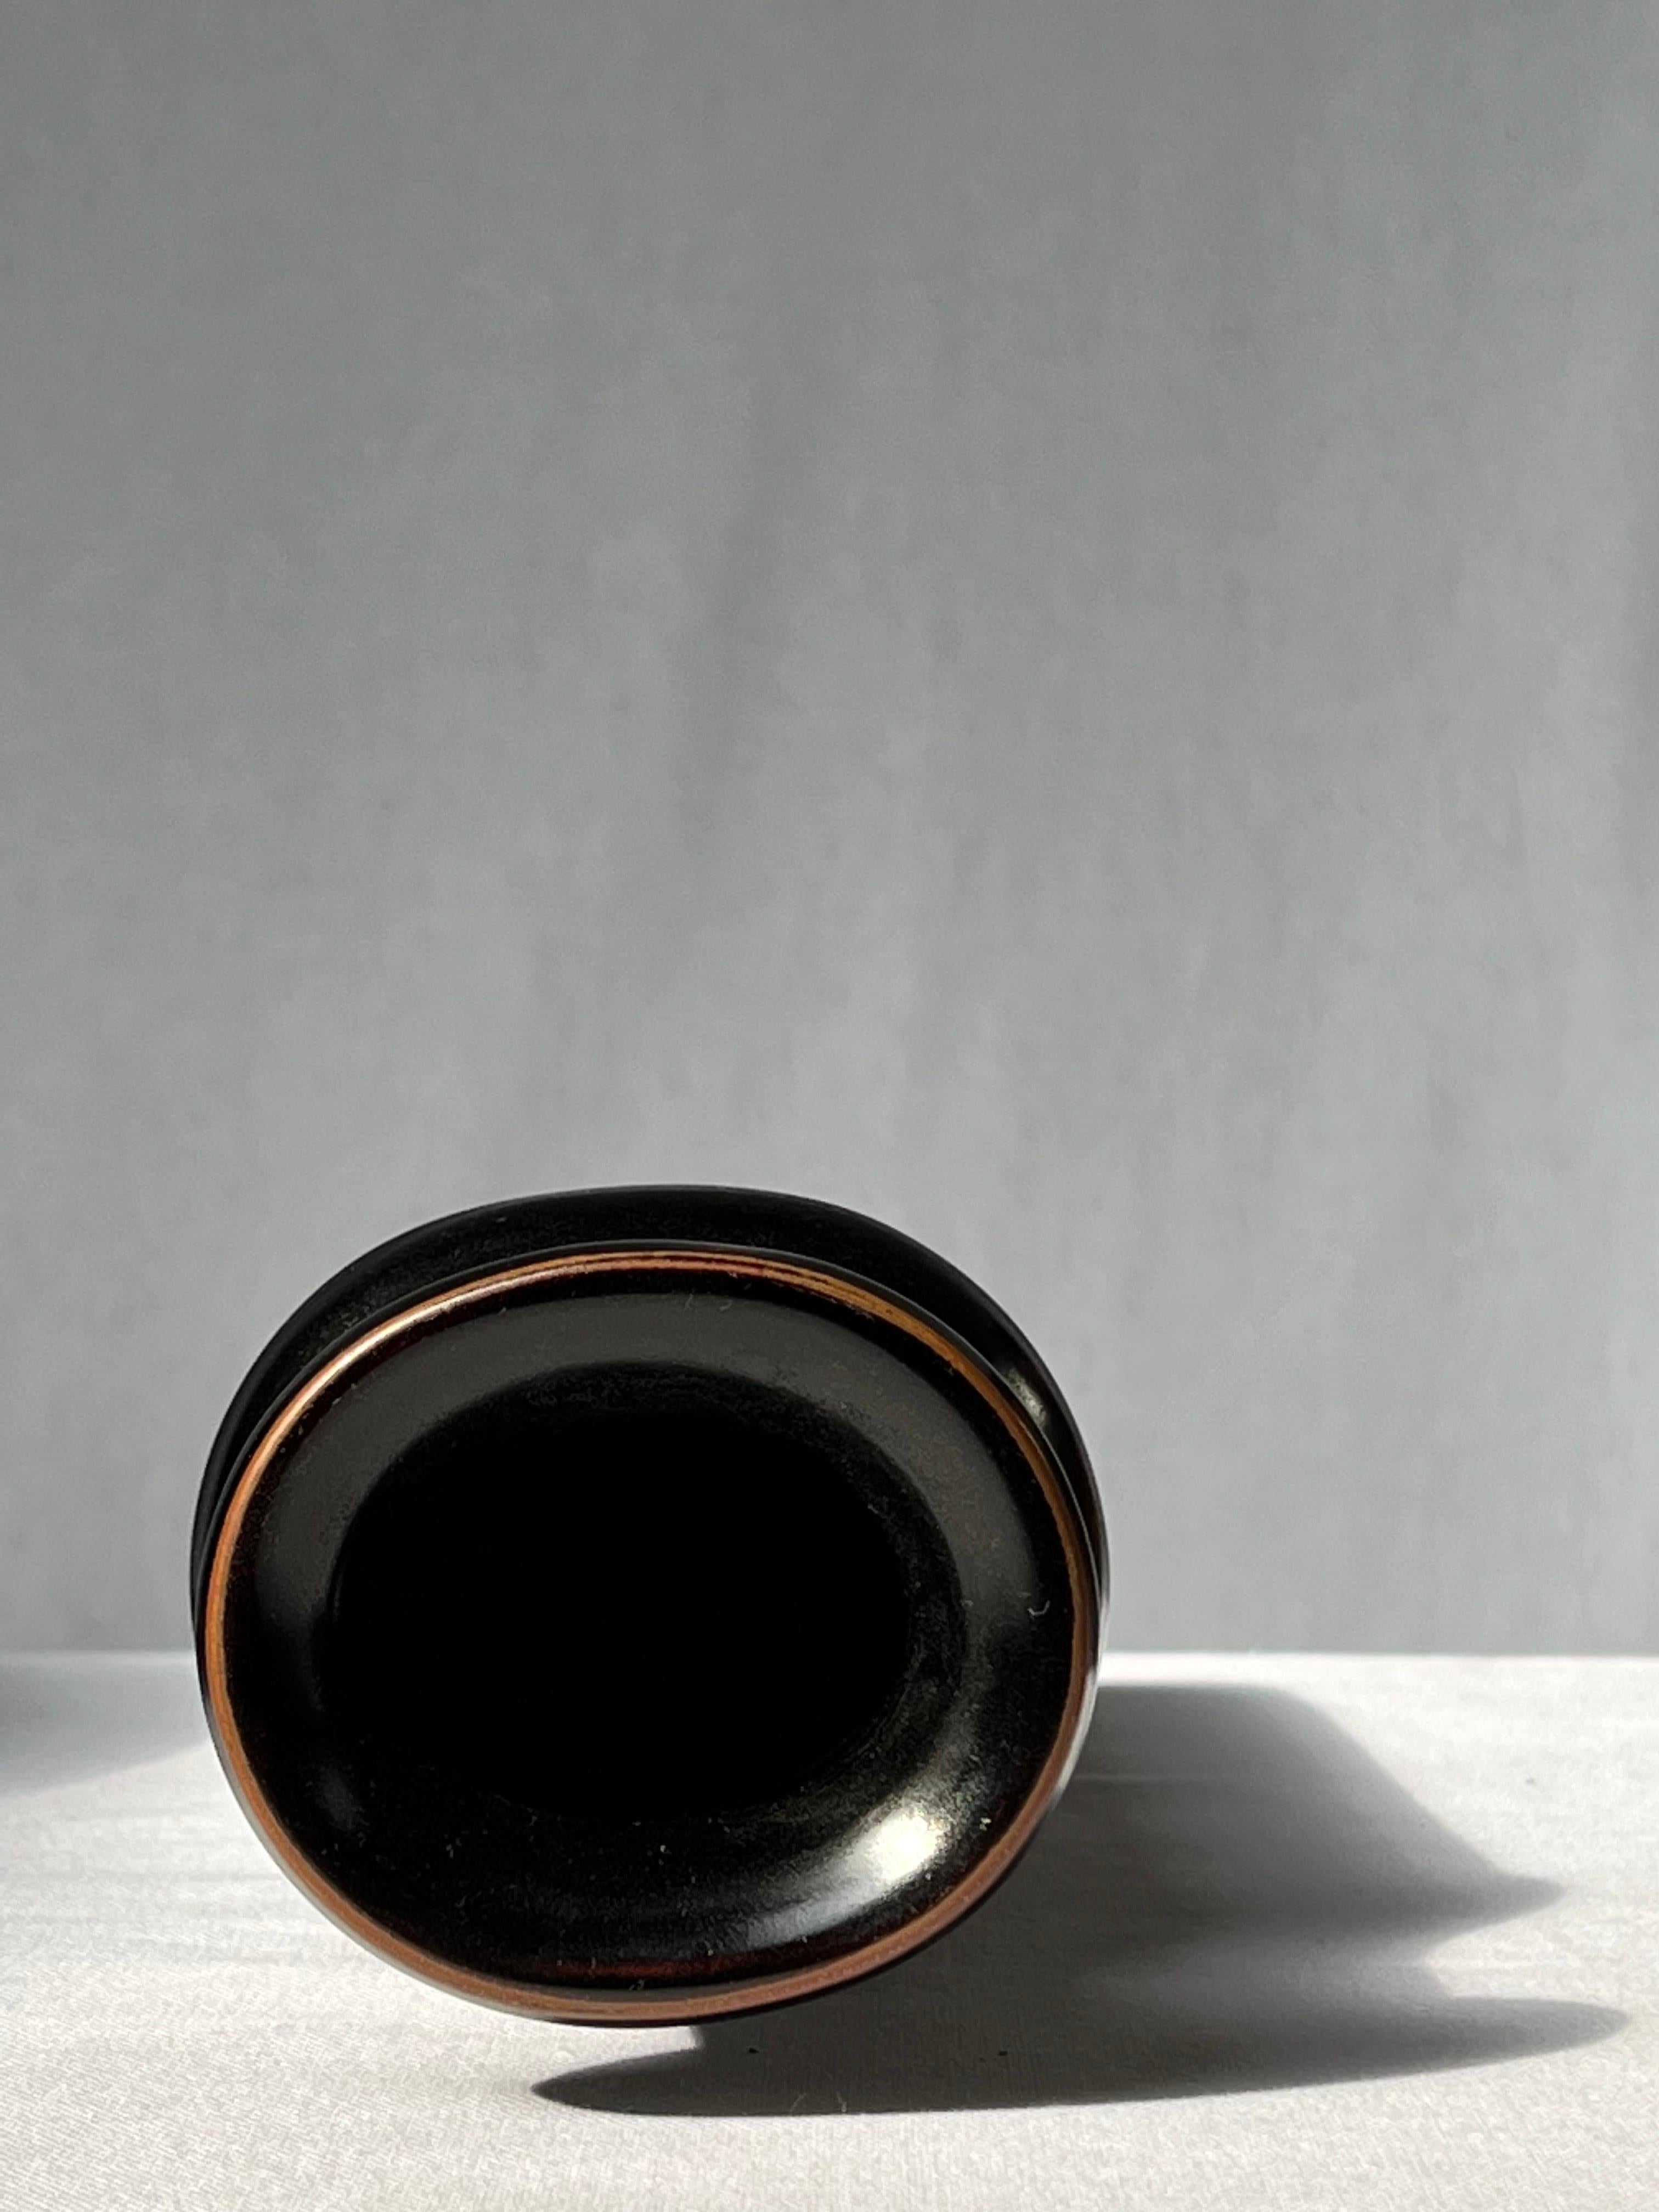 Swedish Stig Lindberg Unique Vase in black Glaze Tenmoku Made by Hand Sweden 1978 For Sale